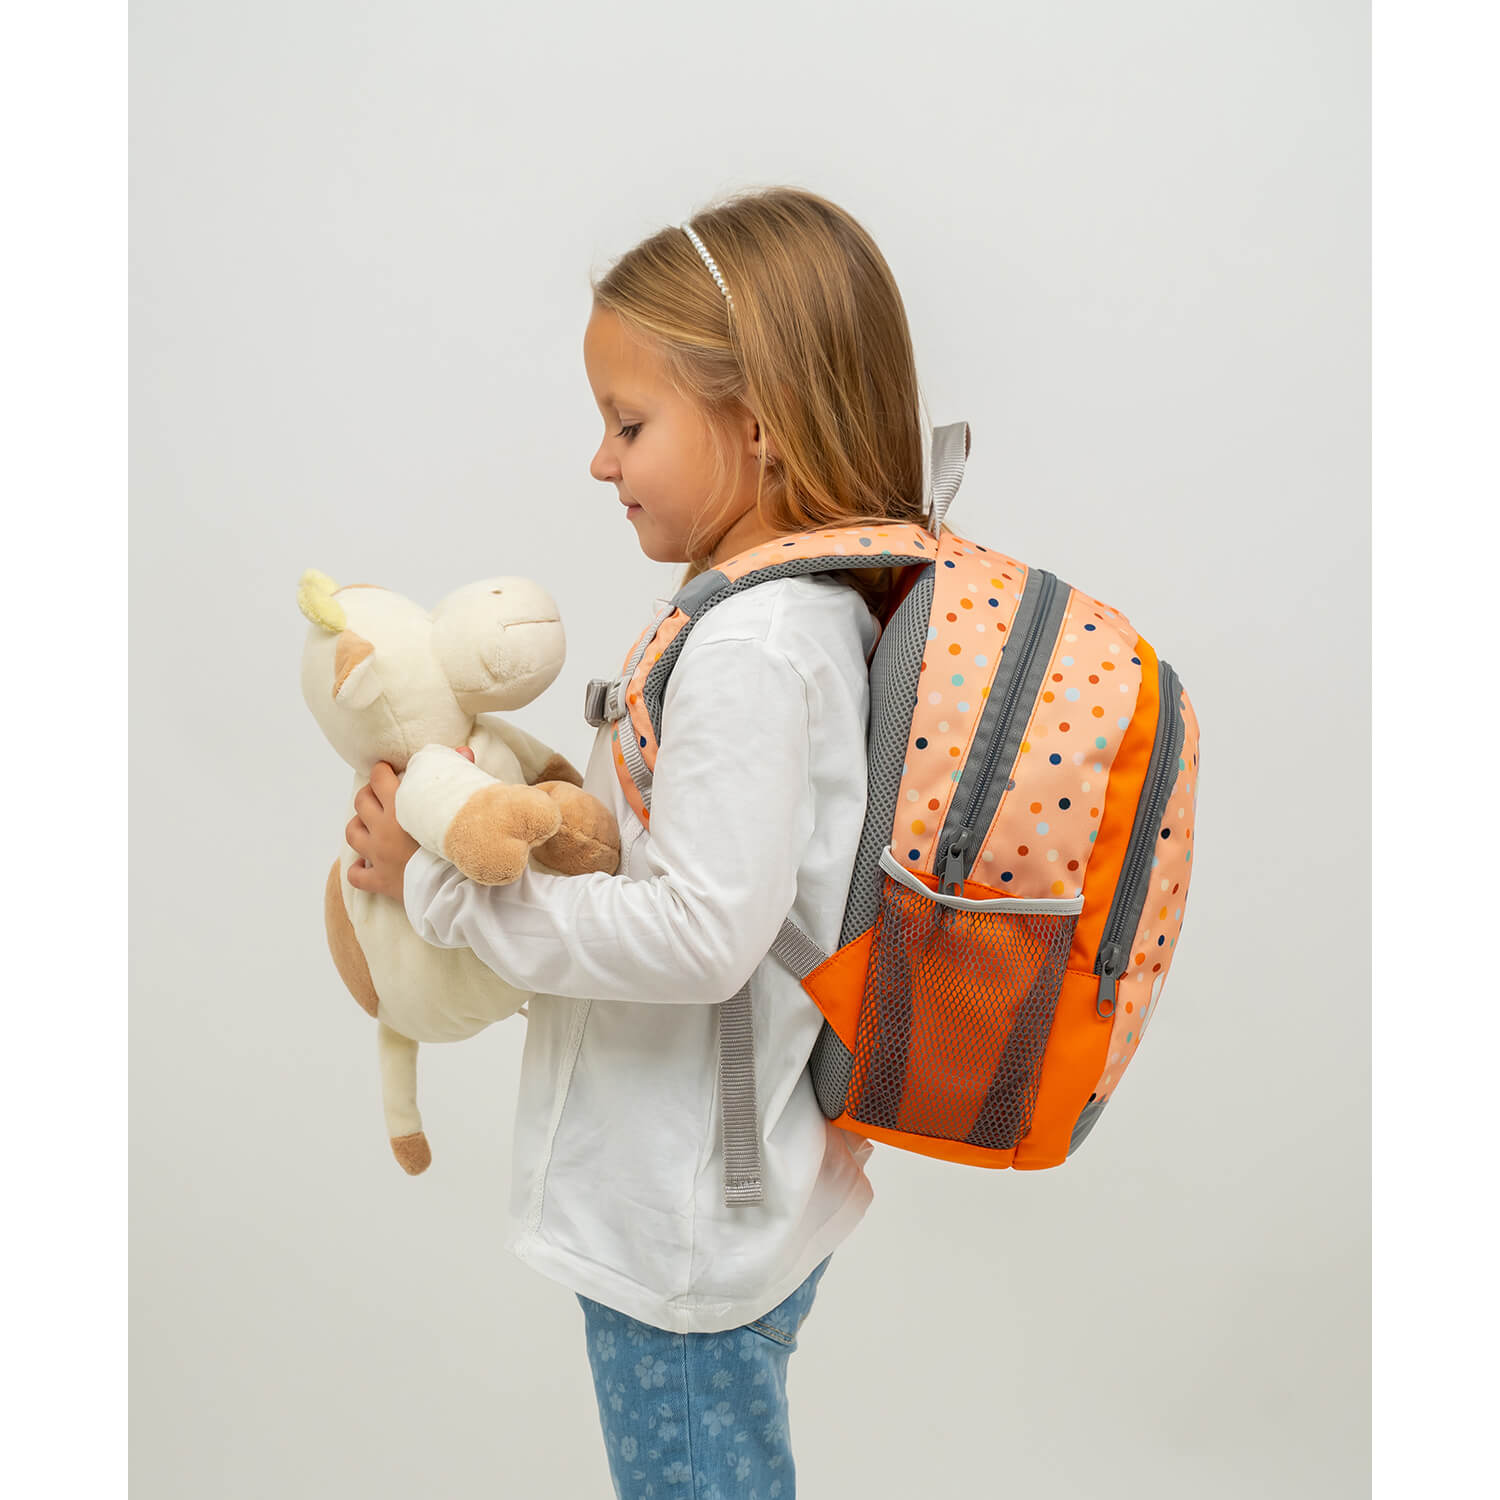 Kiddy Plus Cute Foxy Kindergarten Bag